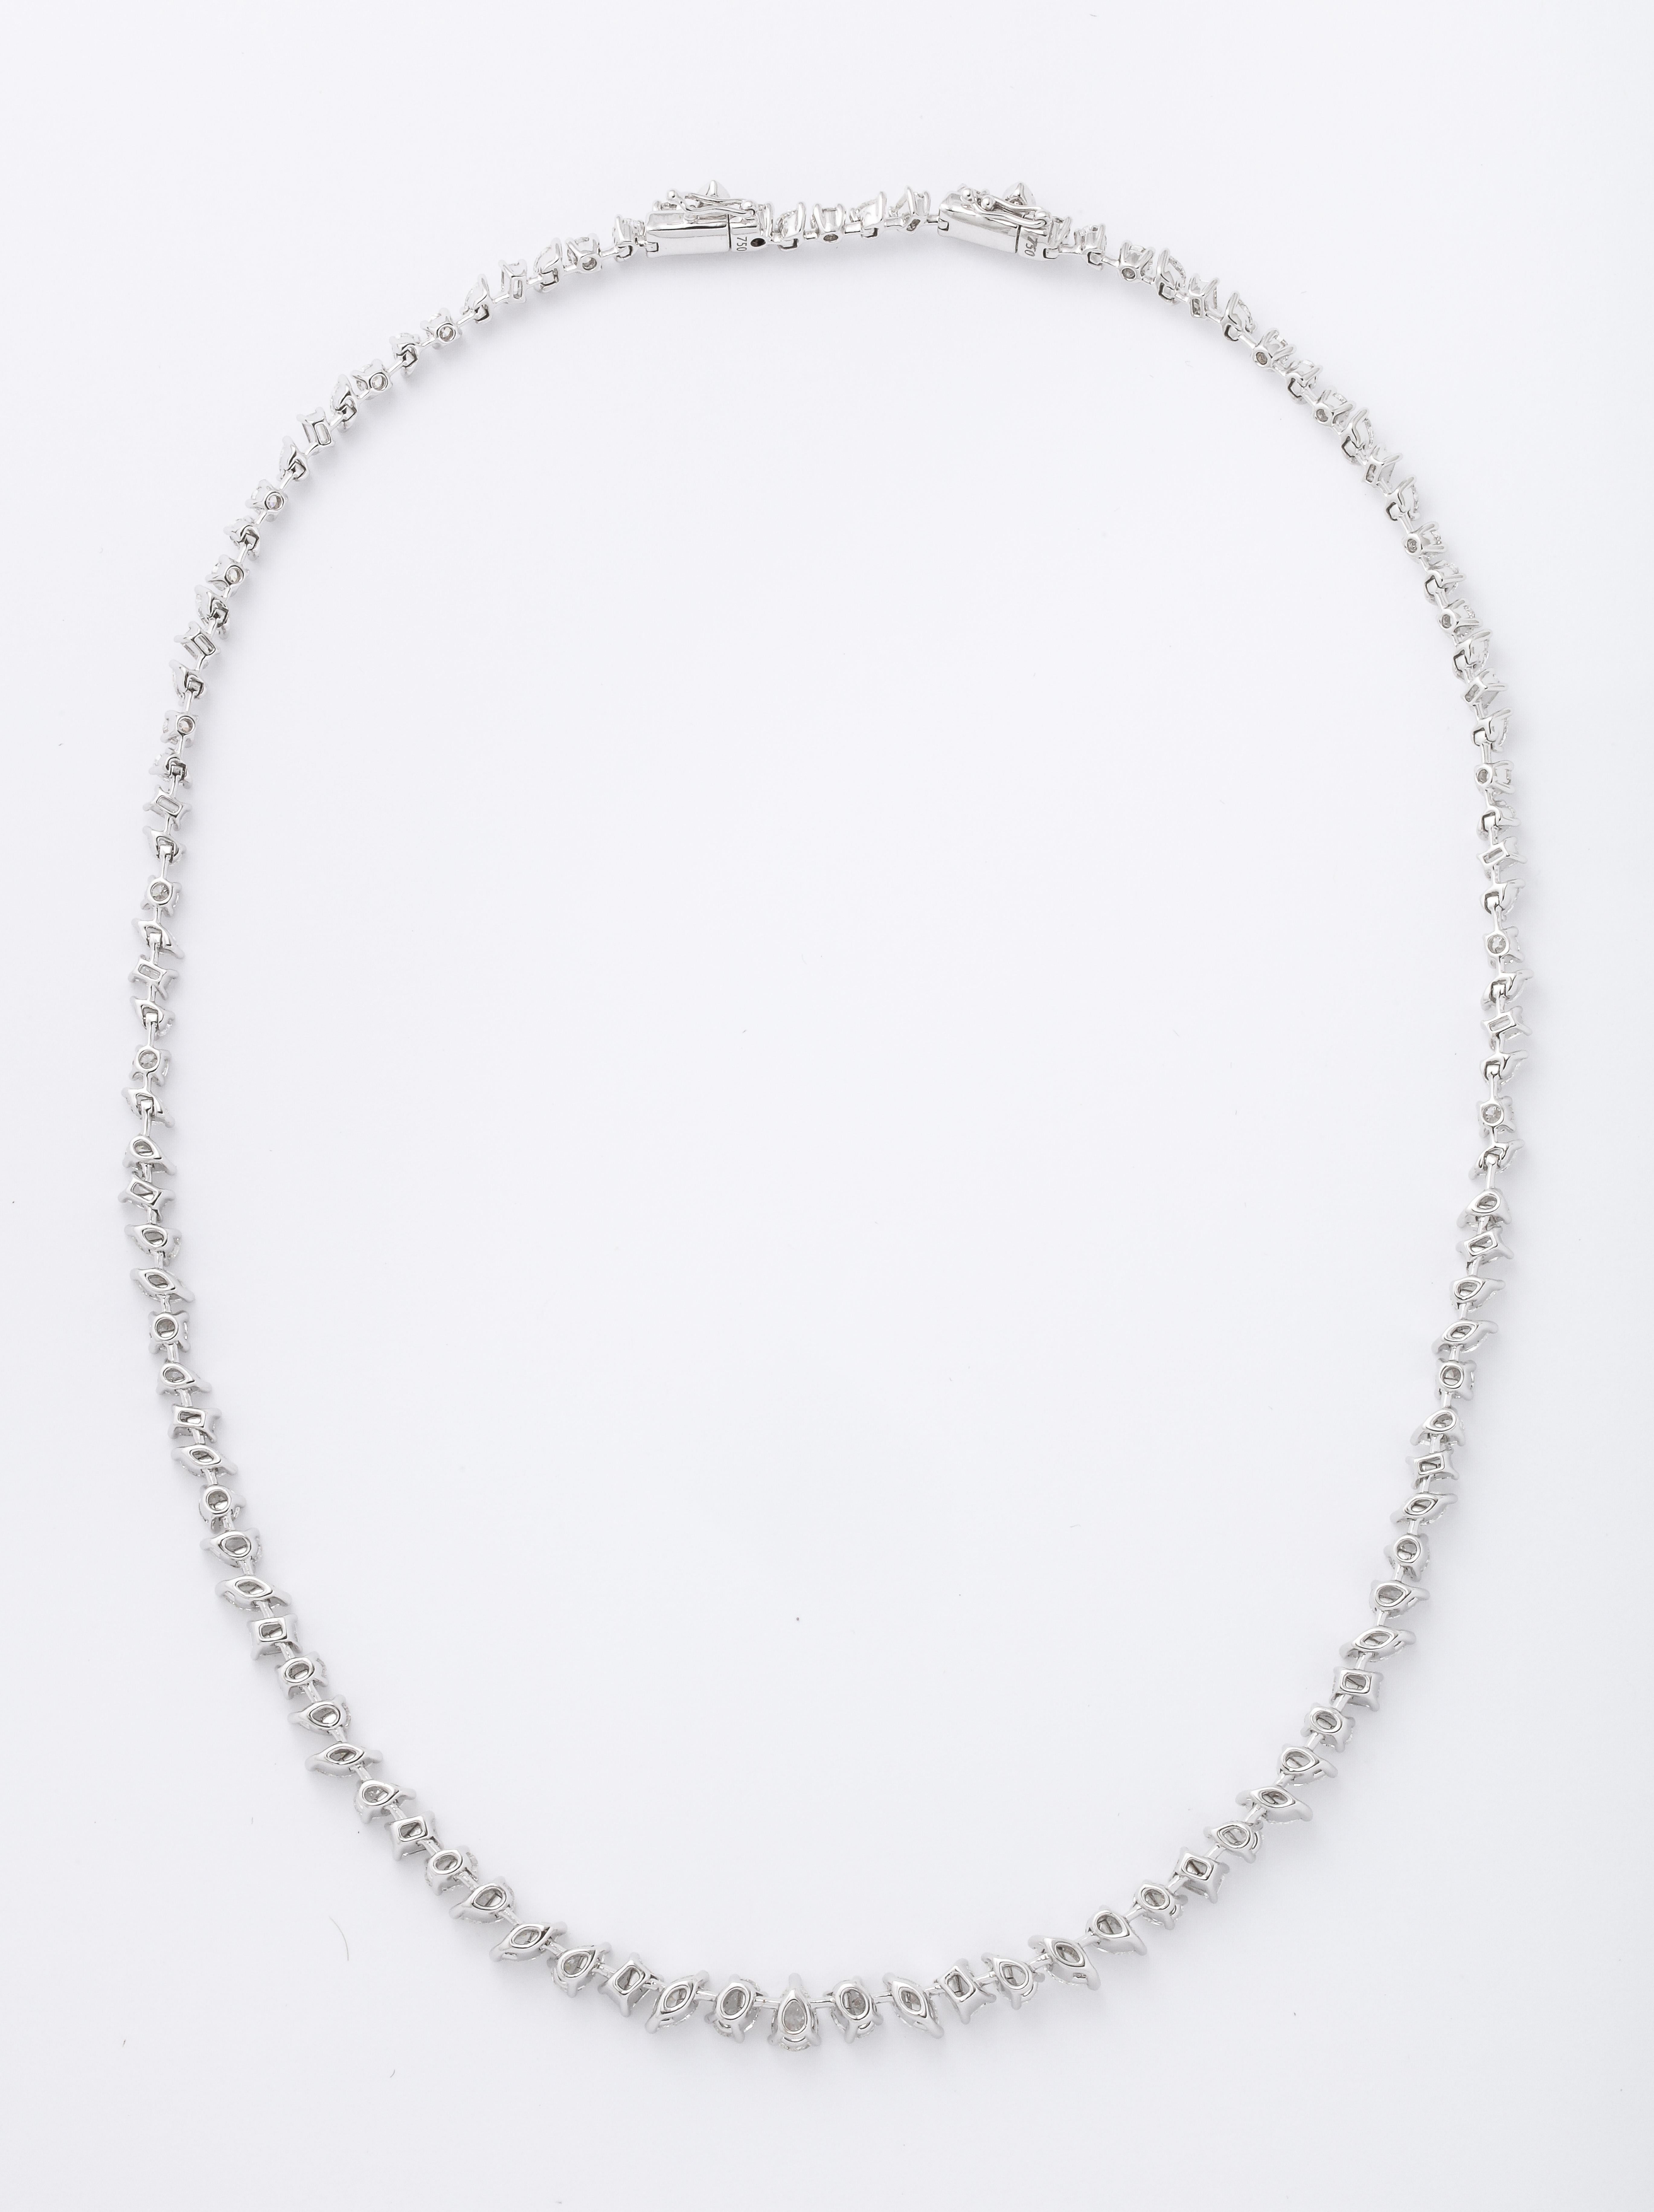 Emerald Cut Multi-Shape Diamond Necklace For Sale